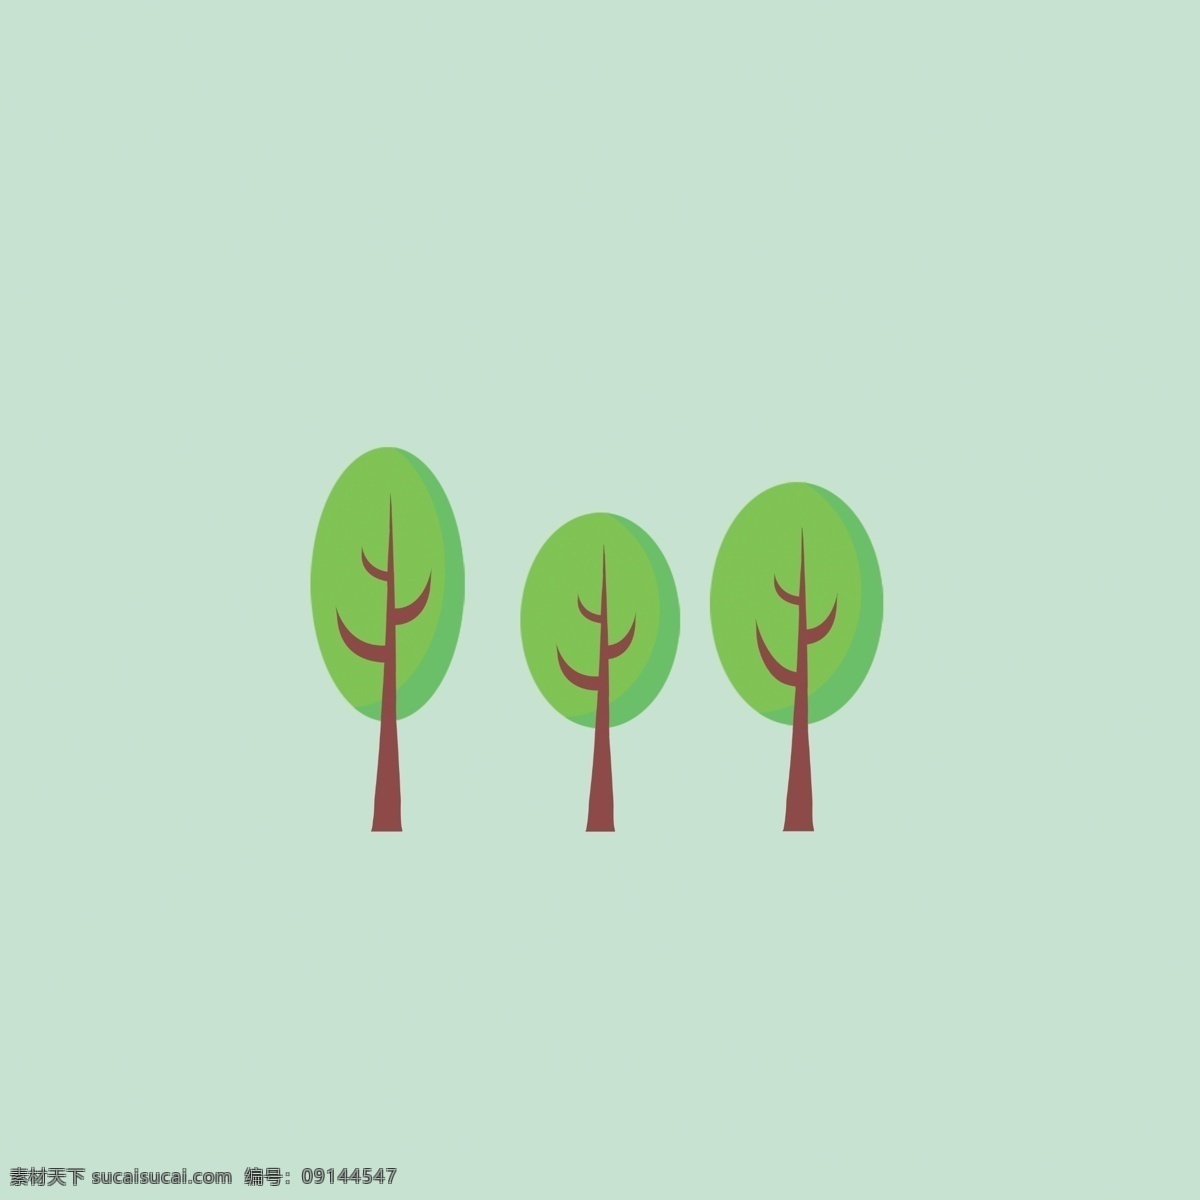 简约小树 简约风 海报 封面 杂志小说封面 绿色 春天 夏天 高大上 极简背景 生物世界 树木树叶